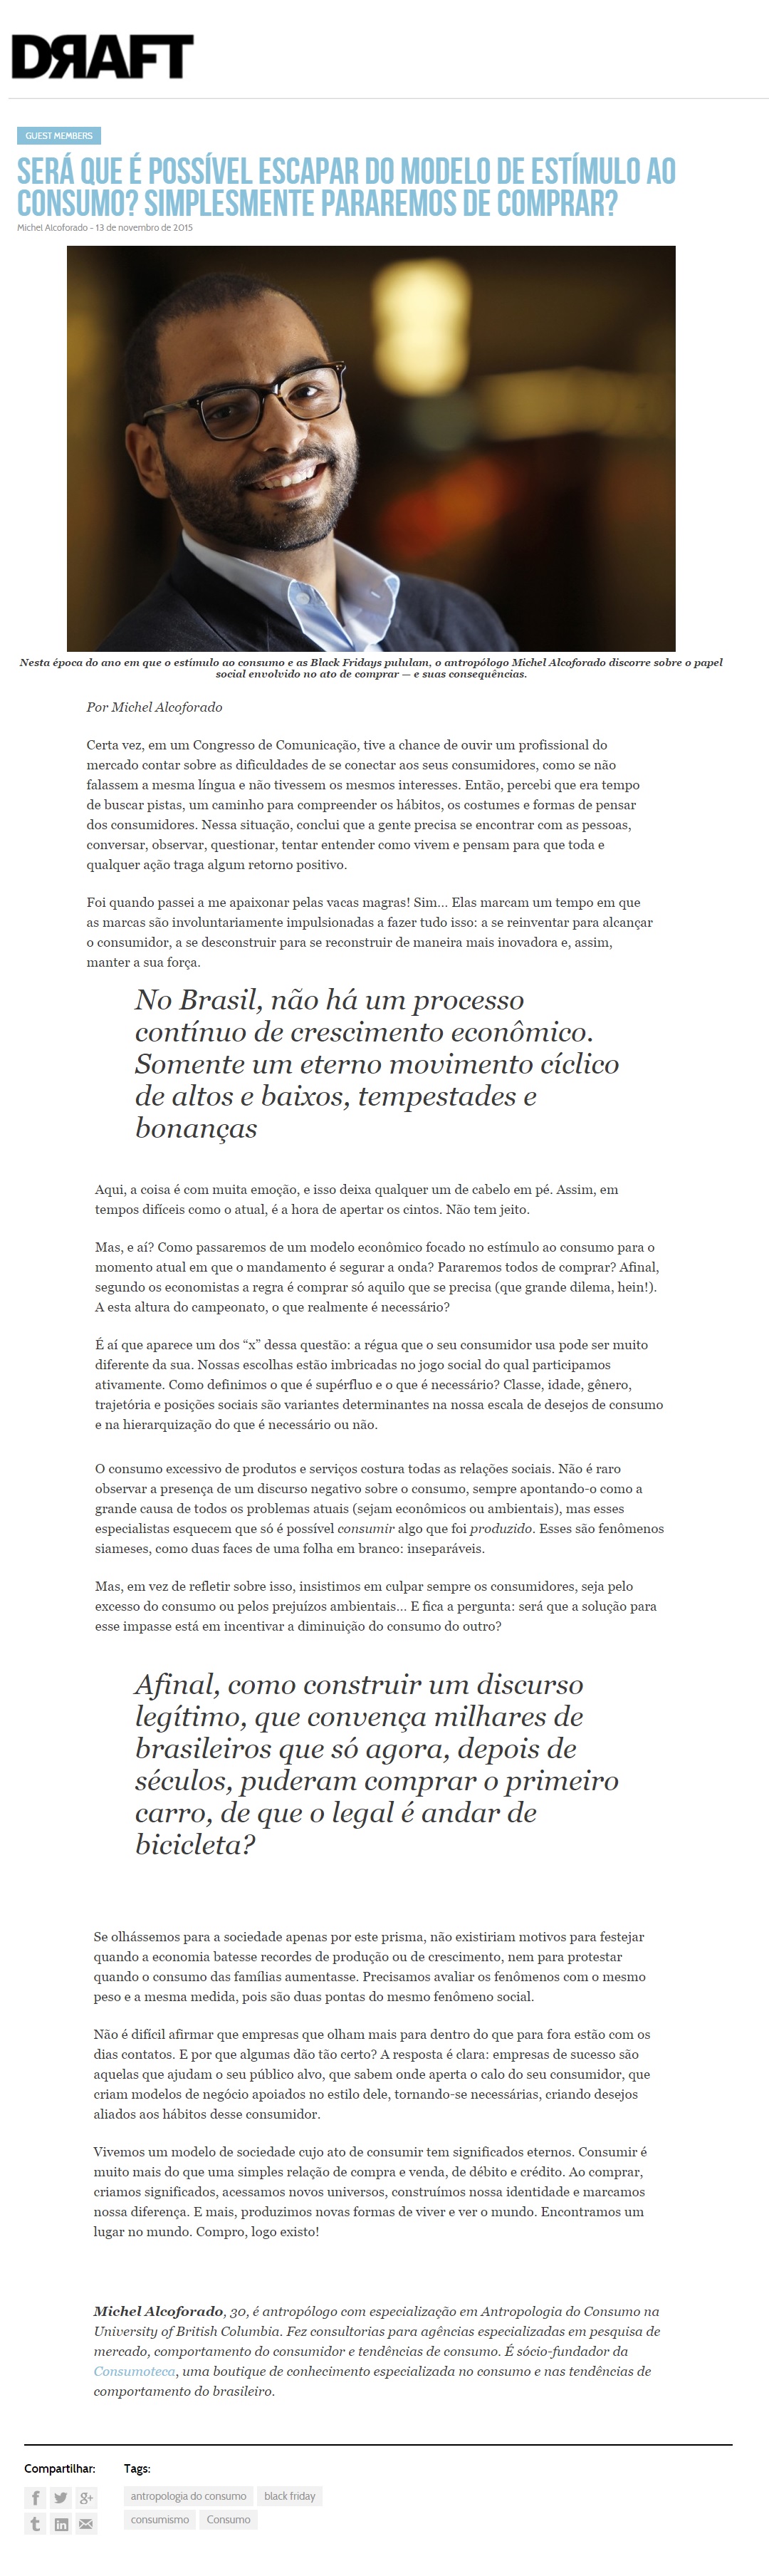 CONSUMOTECA NO PROJETO DRAFT 13.11.2015